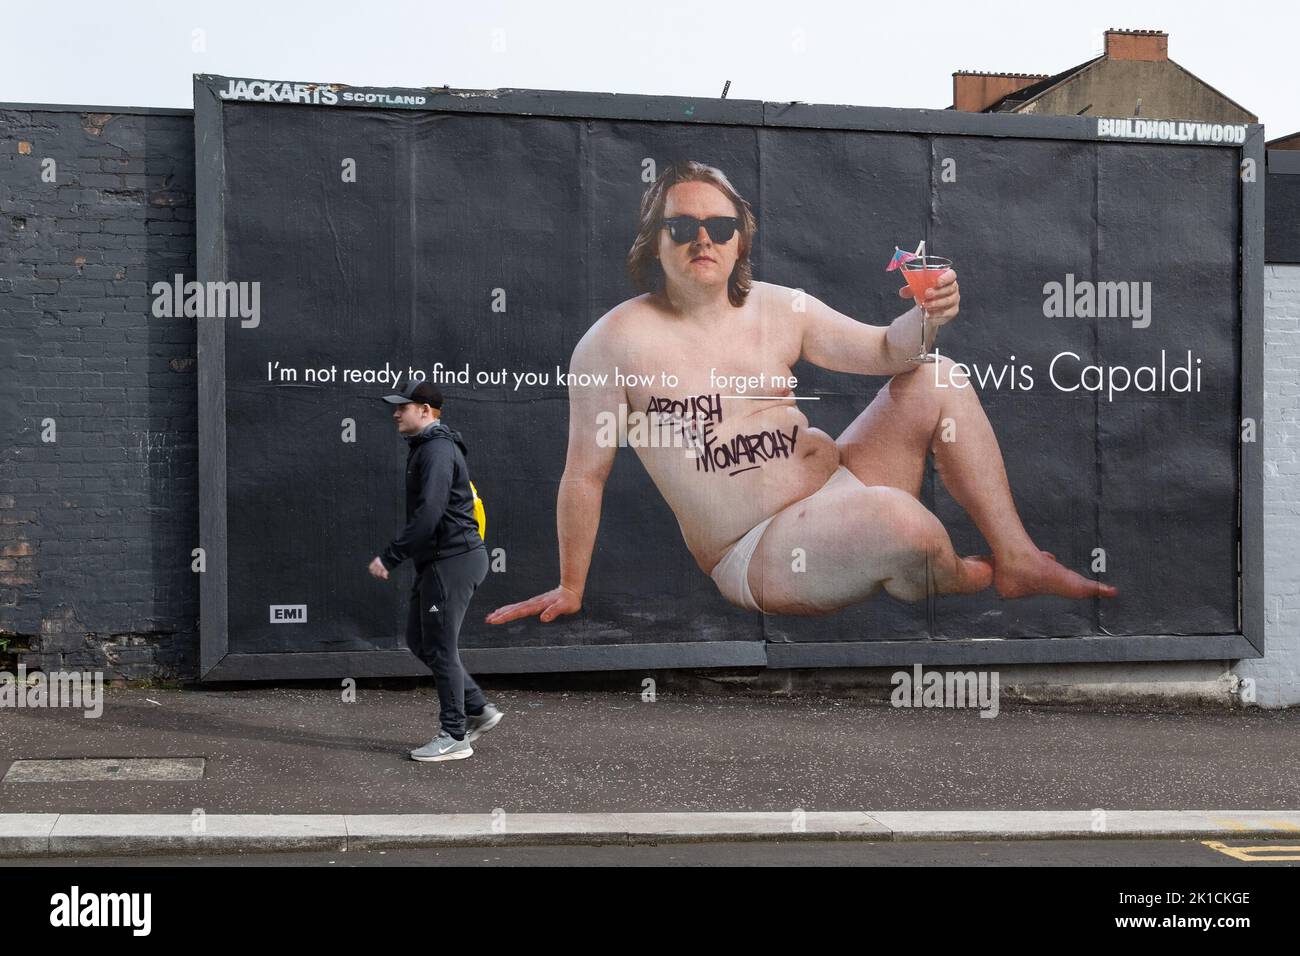 Glasgow, Écosse, Royaume-Uni - abolir le graffiti de la monarchie sur le panneau d'affichage Lewis Capaldi crédit: Kay Roxby/Alamy Live News Banque D'Images